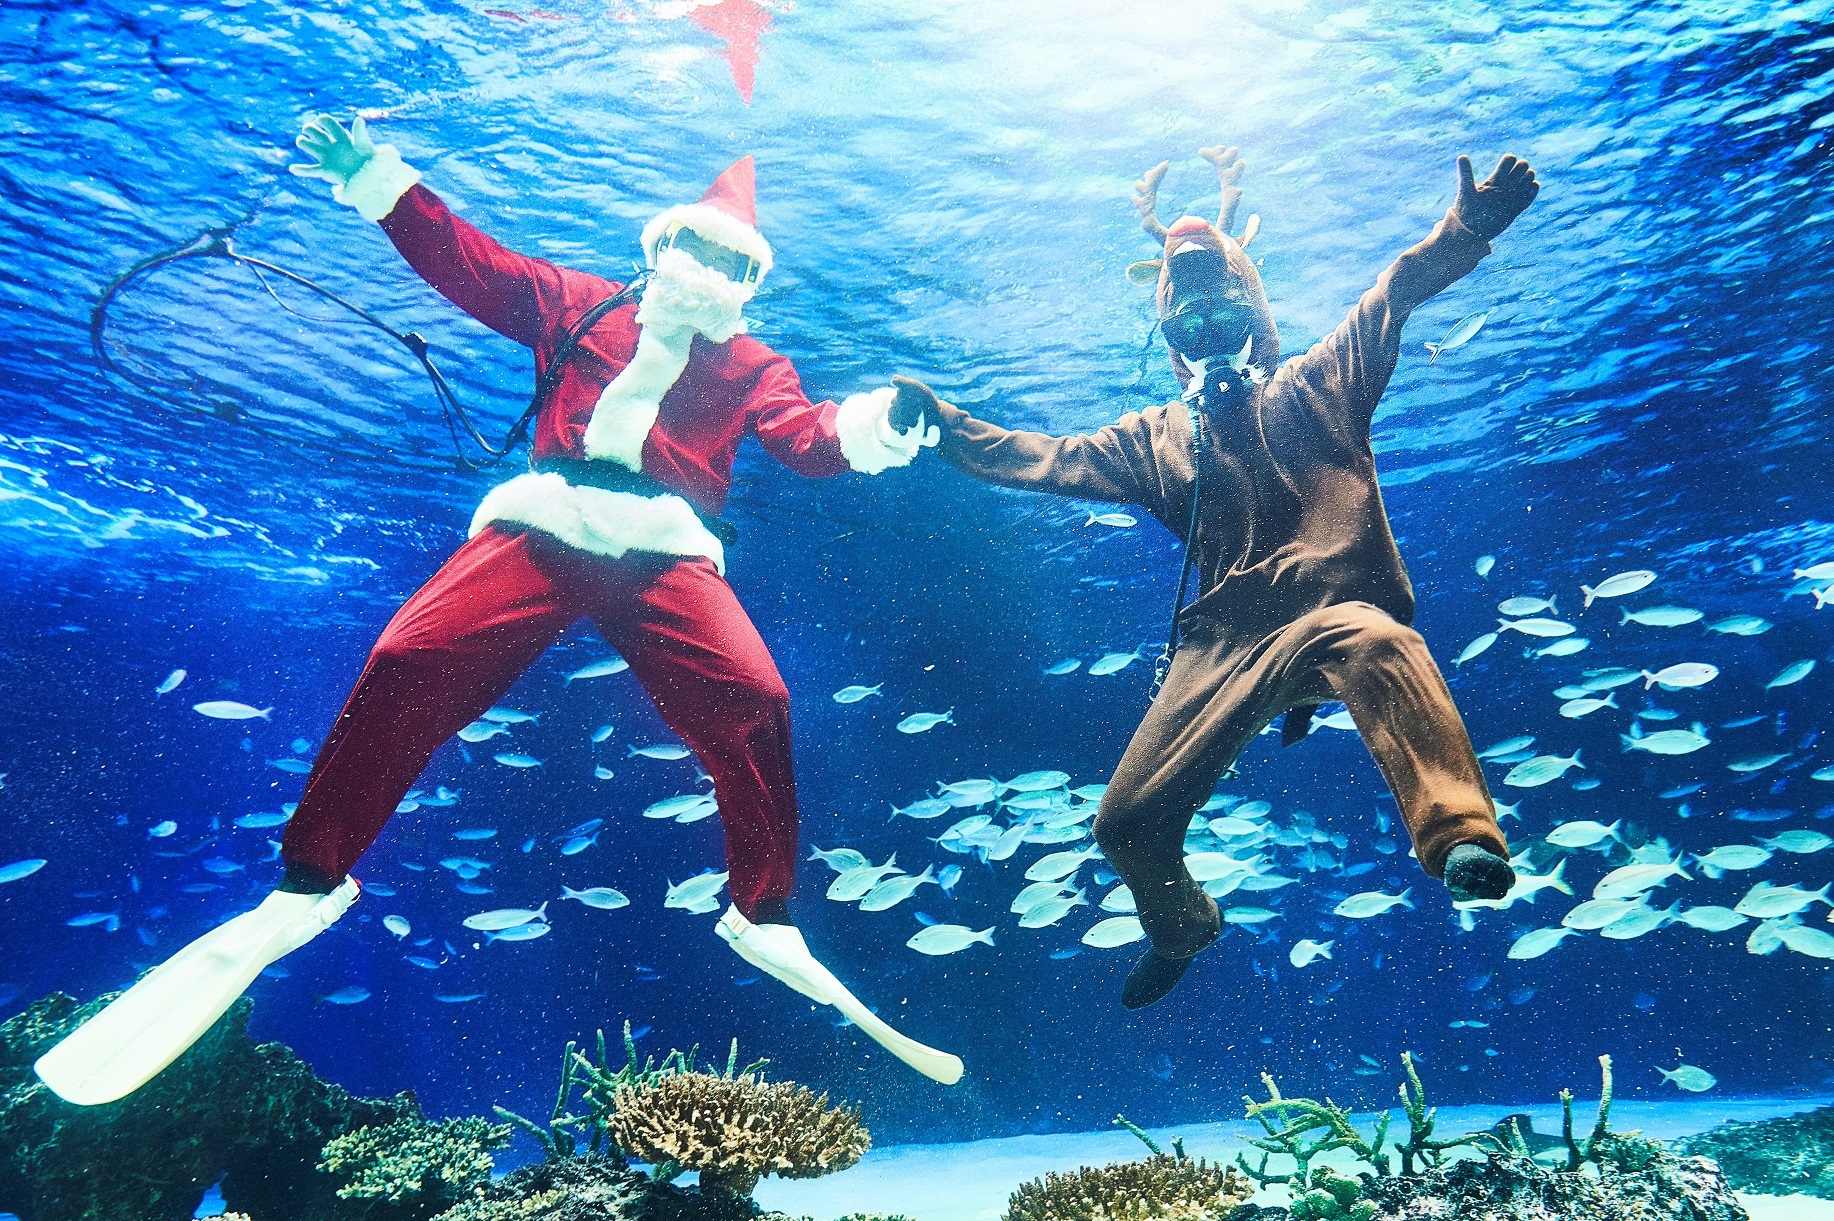 水中パフォーマンスタイムはクリスマスバージョンで、大水槽「サンシャインラグーン」でサンタとトナカイが登場。 